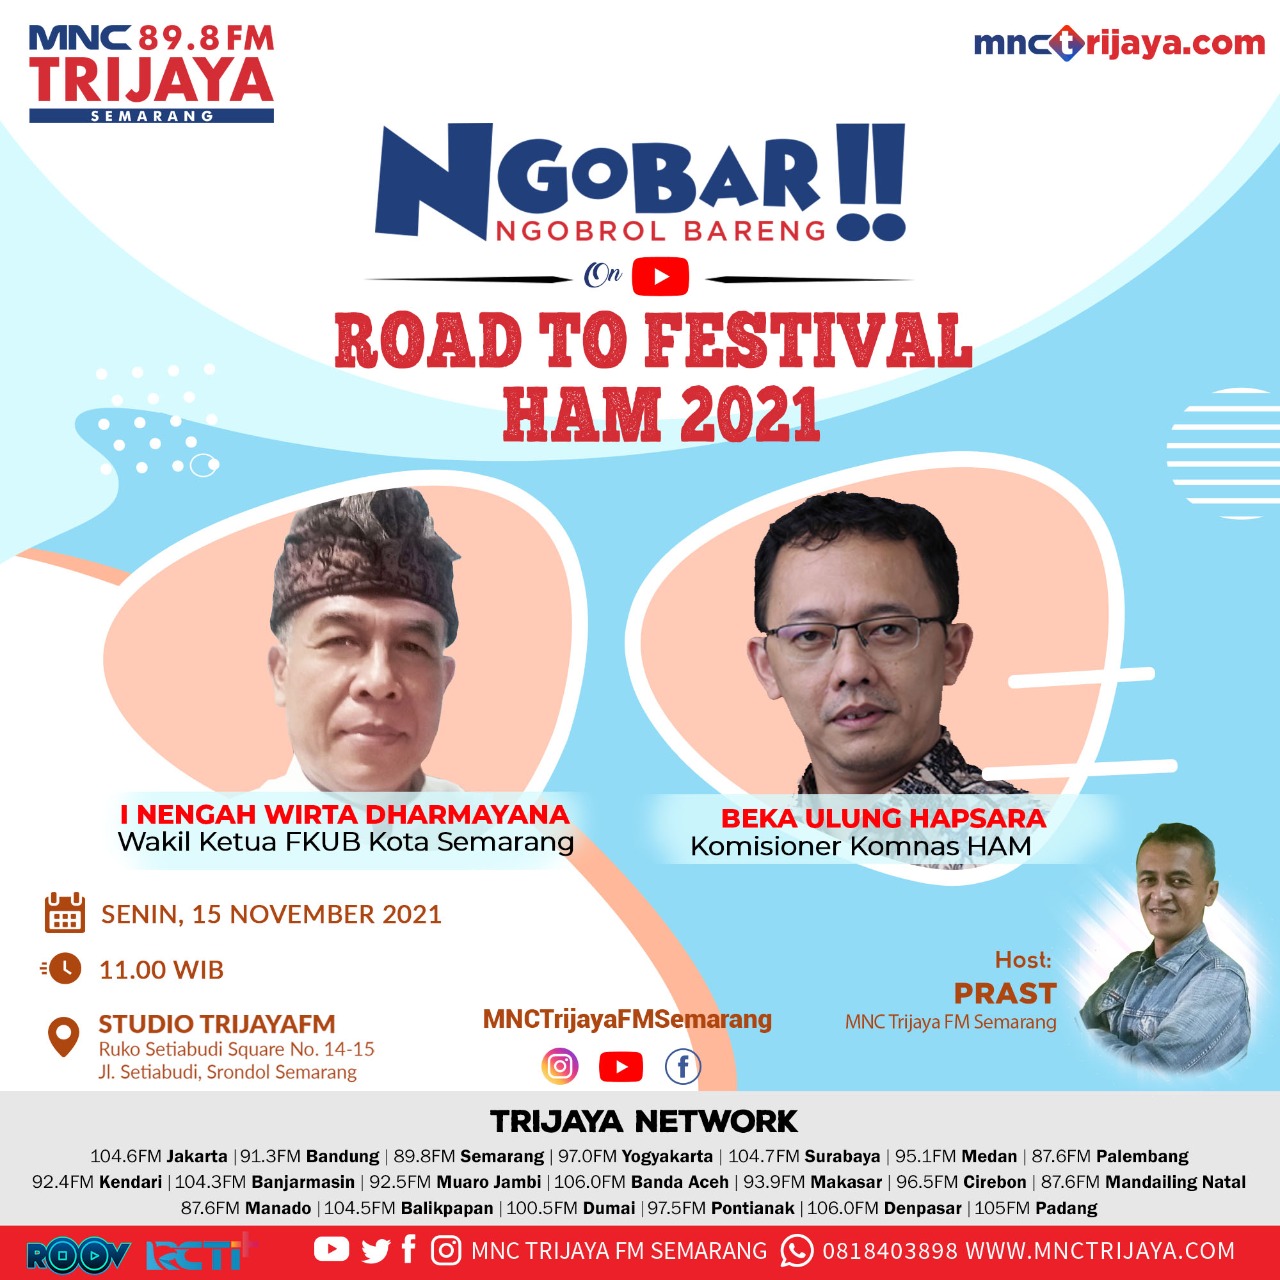 Mengapa Festival HAM 2021 Diselenggarakan di Semarang? 